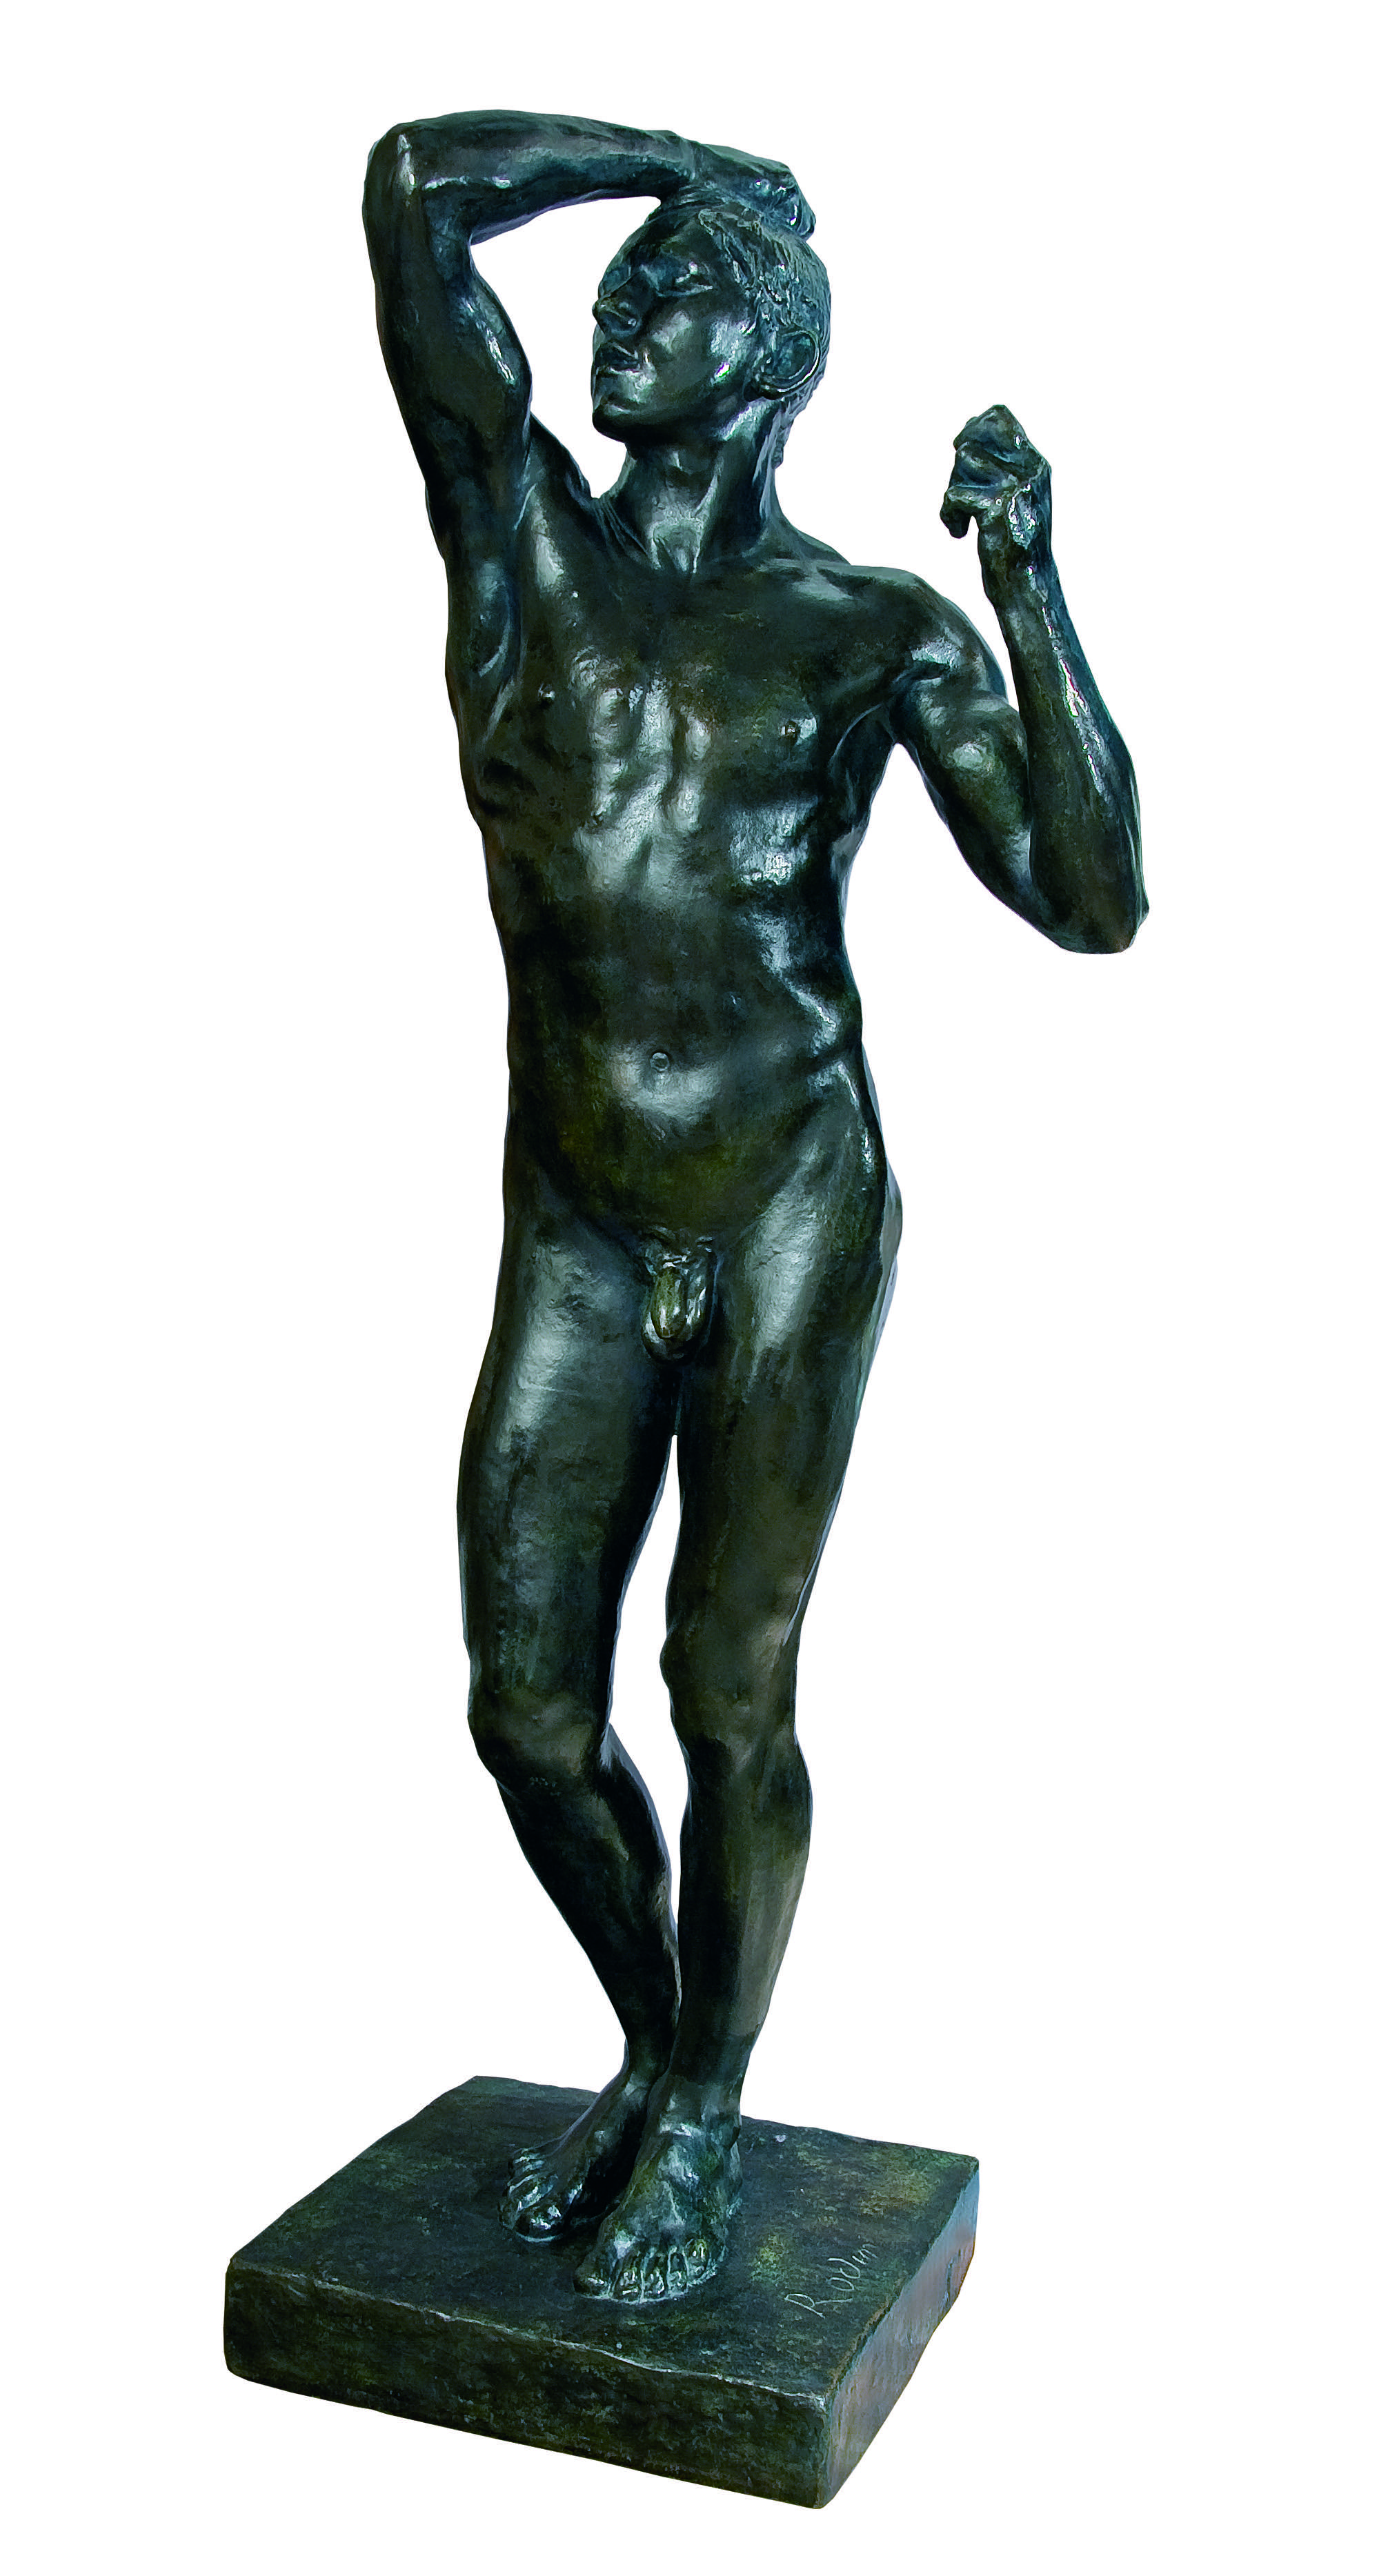 Rodin – The Bronze Age